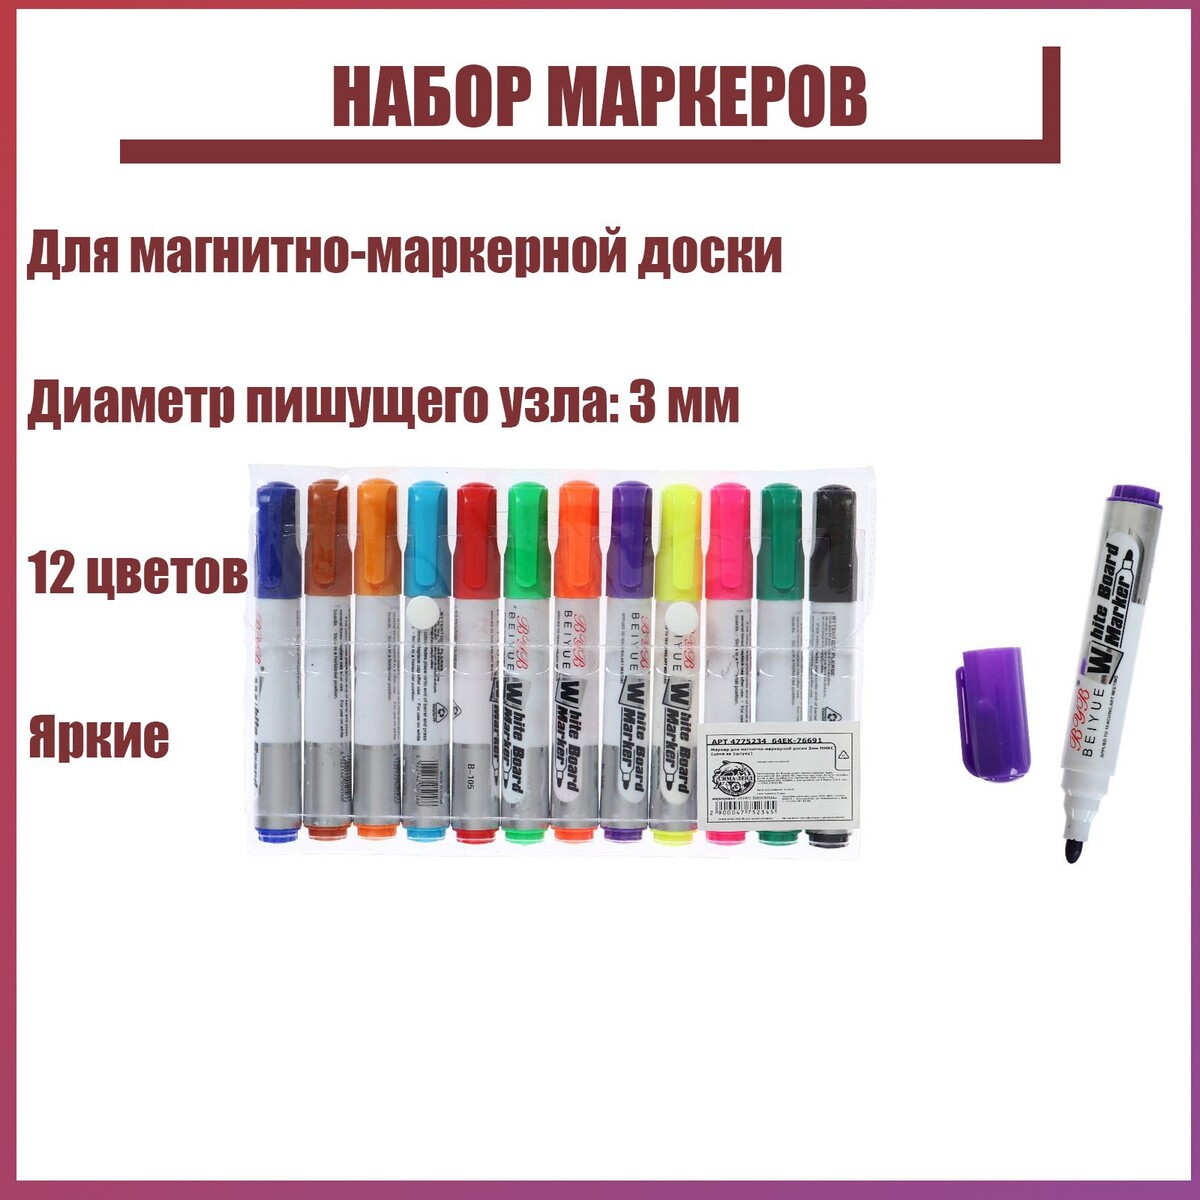 Набор маркеров для магнитно-маркерной доски, 3 мм, 12 цветов набор маркеров для доски 4 а 3 0 мм luxor 750 3380 4 wt